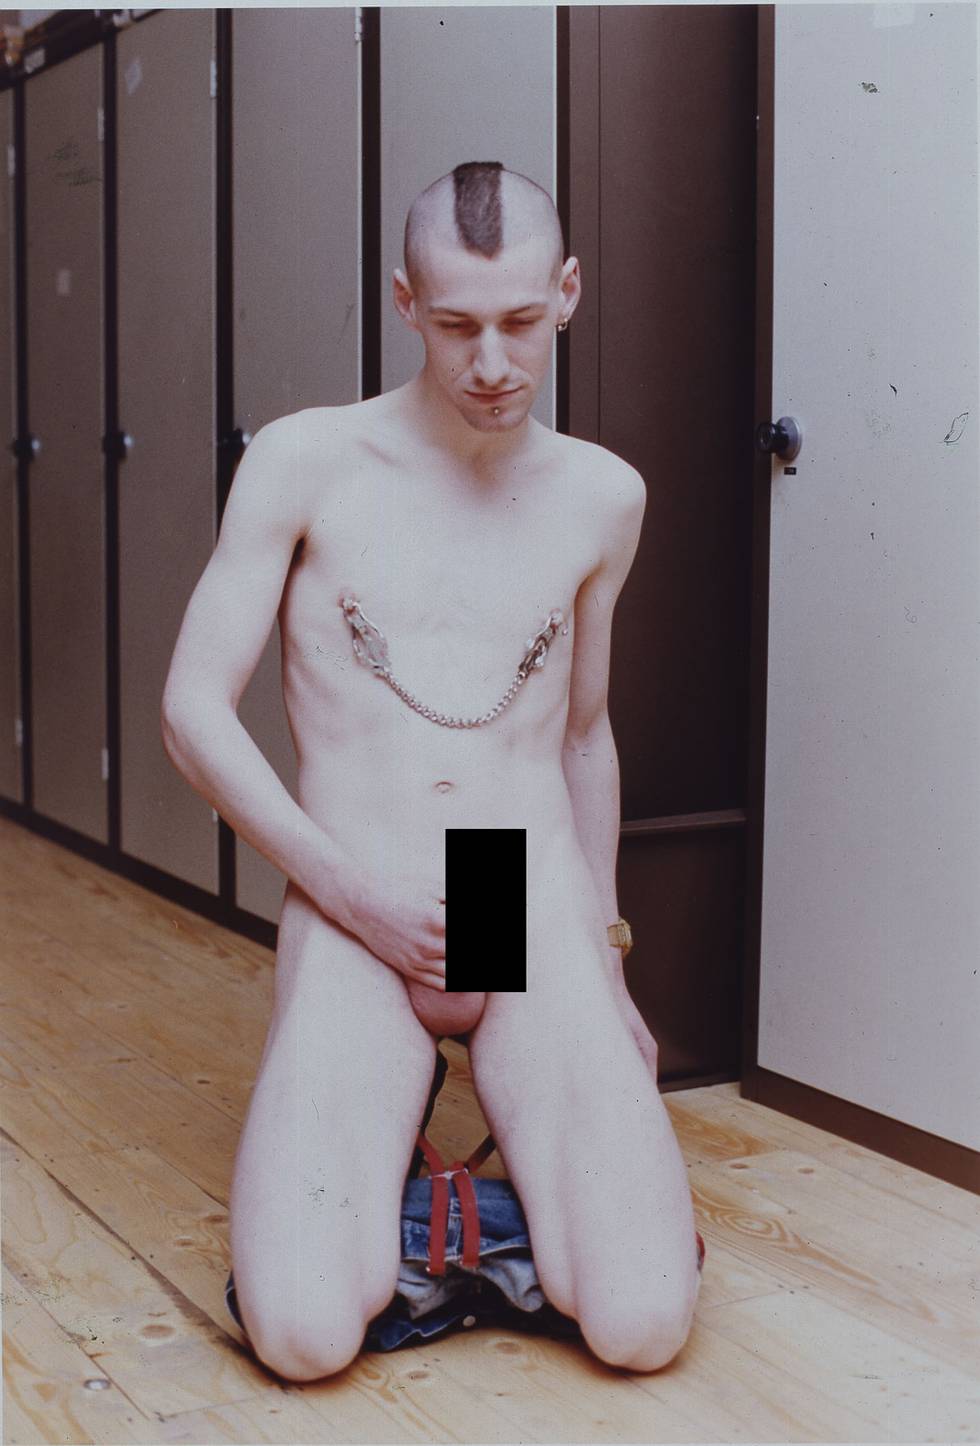 wolfgang-tillmans-kneeling-nude-1997-galerie-buchholz-berlin-cologne Kopie.jpg